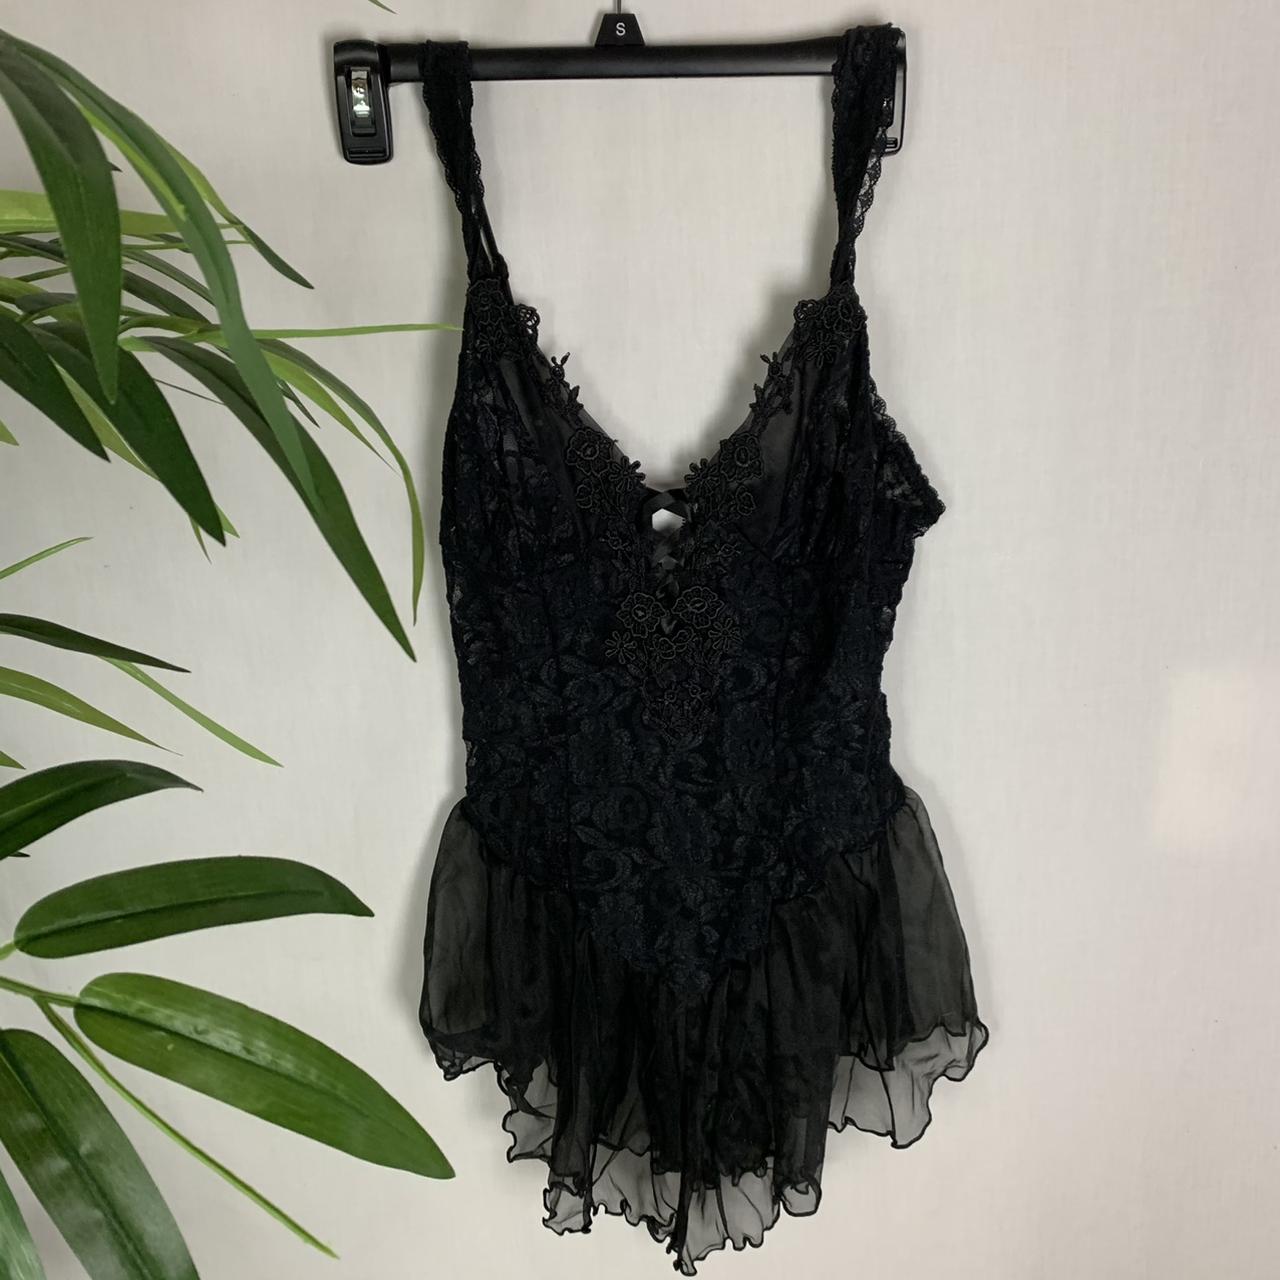 ⭐️VINTAGE MINI DRESS⭐️ Vintage black goth floral laced... - Depop